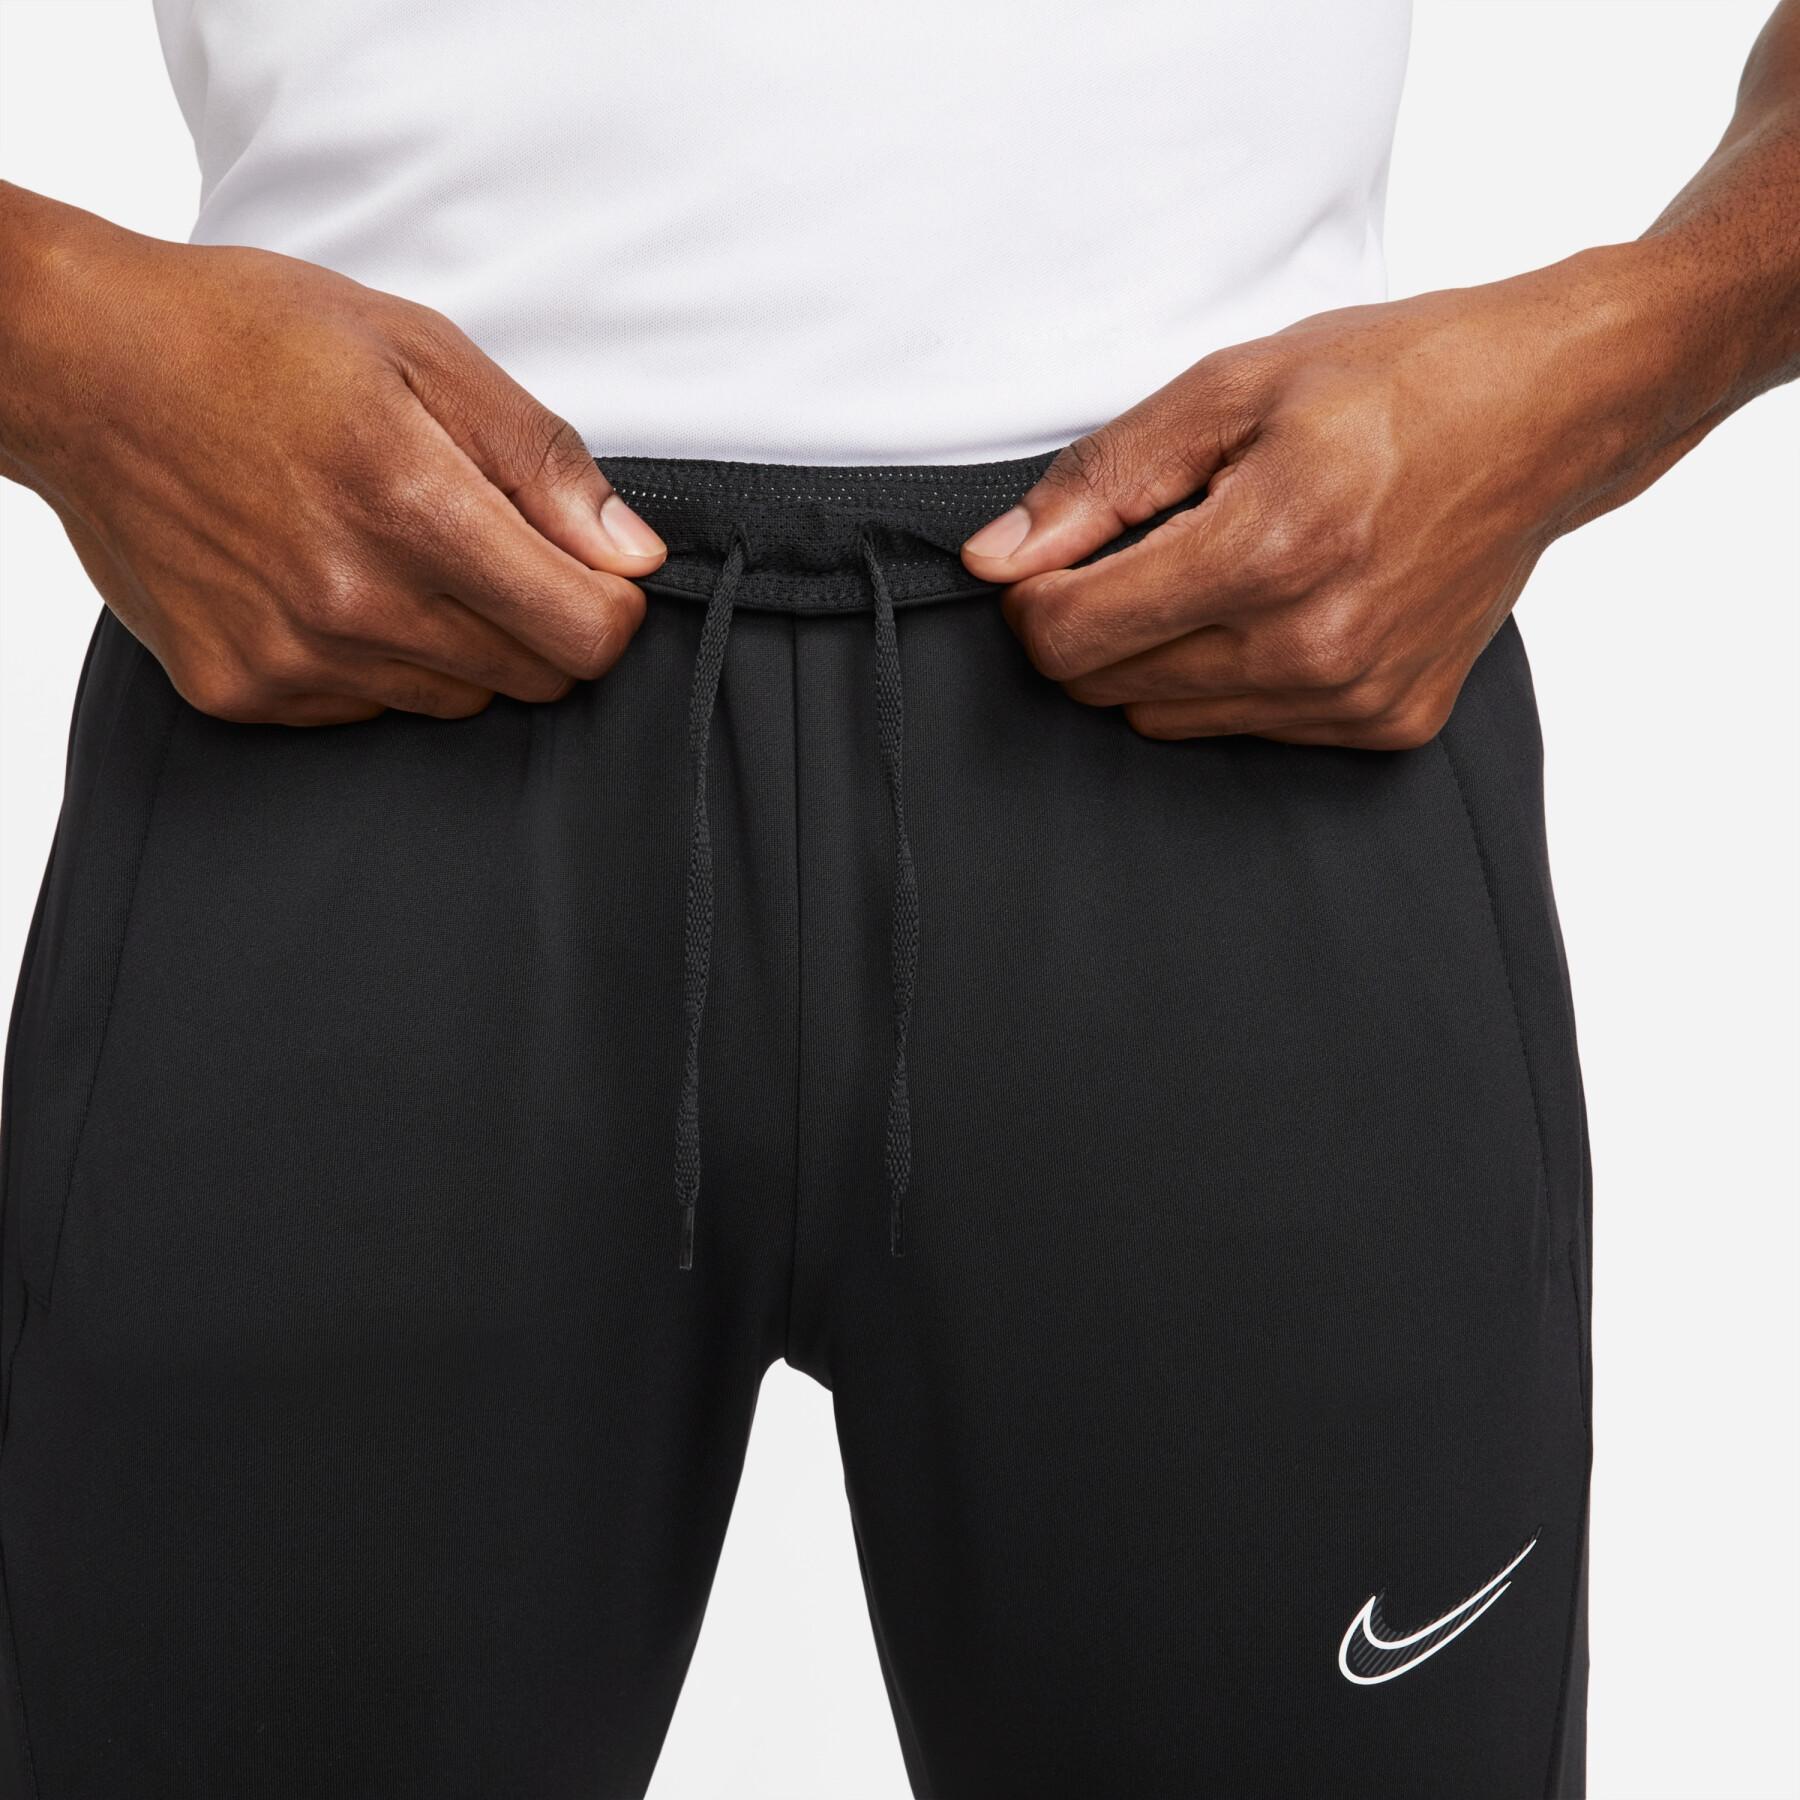 Pantalon Nike Dri-Fit Strike